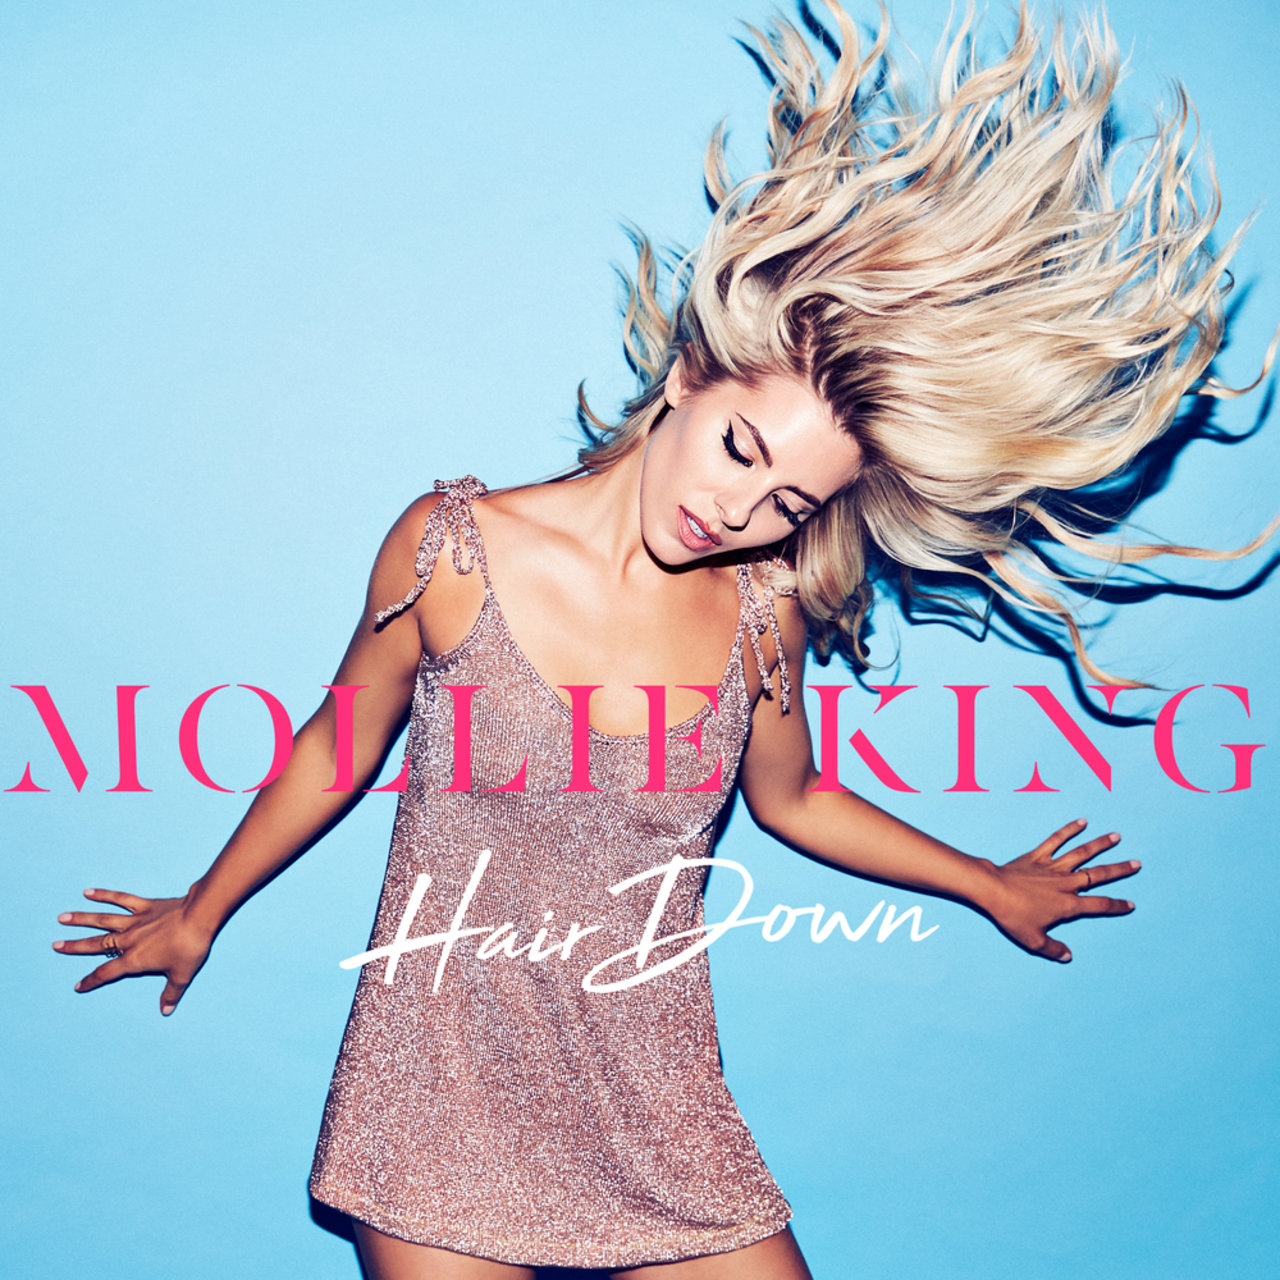 Mollie King — Hair Down cover artwork